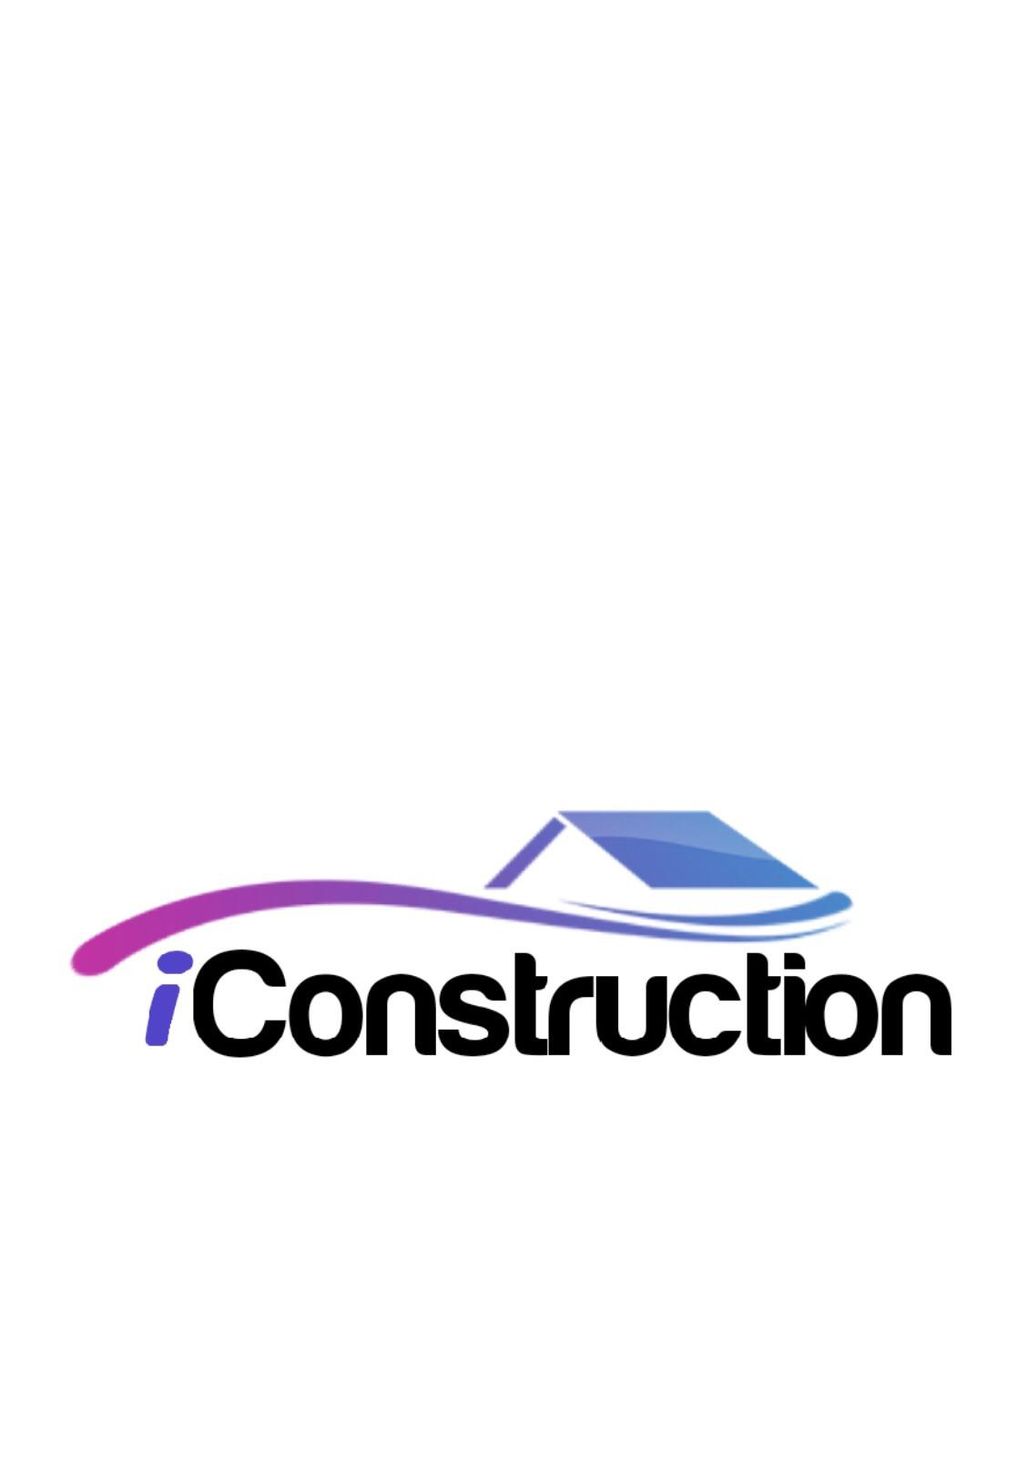 I Construction